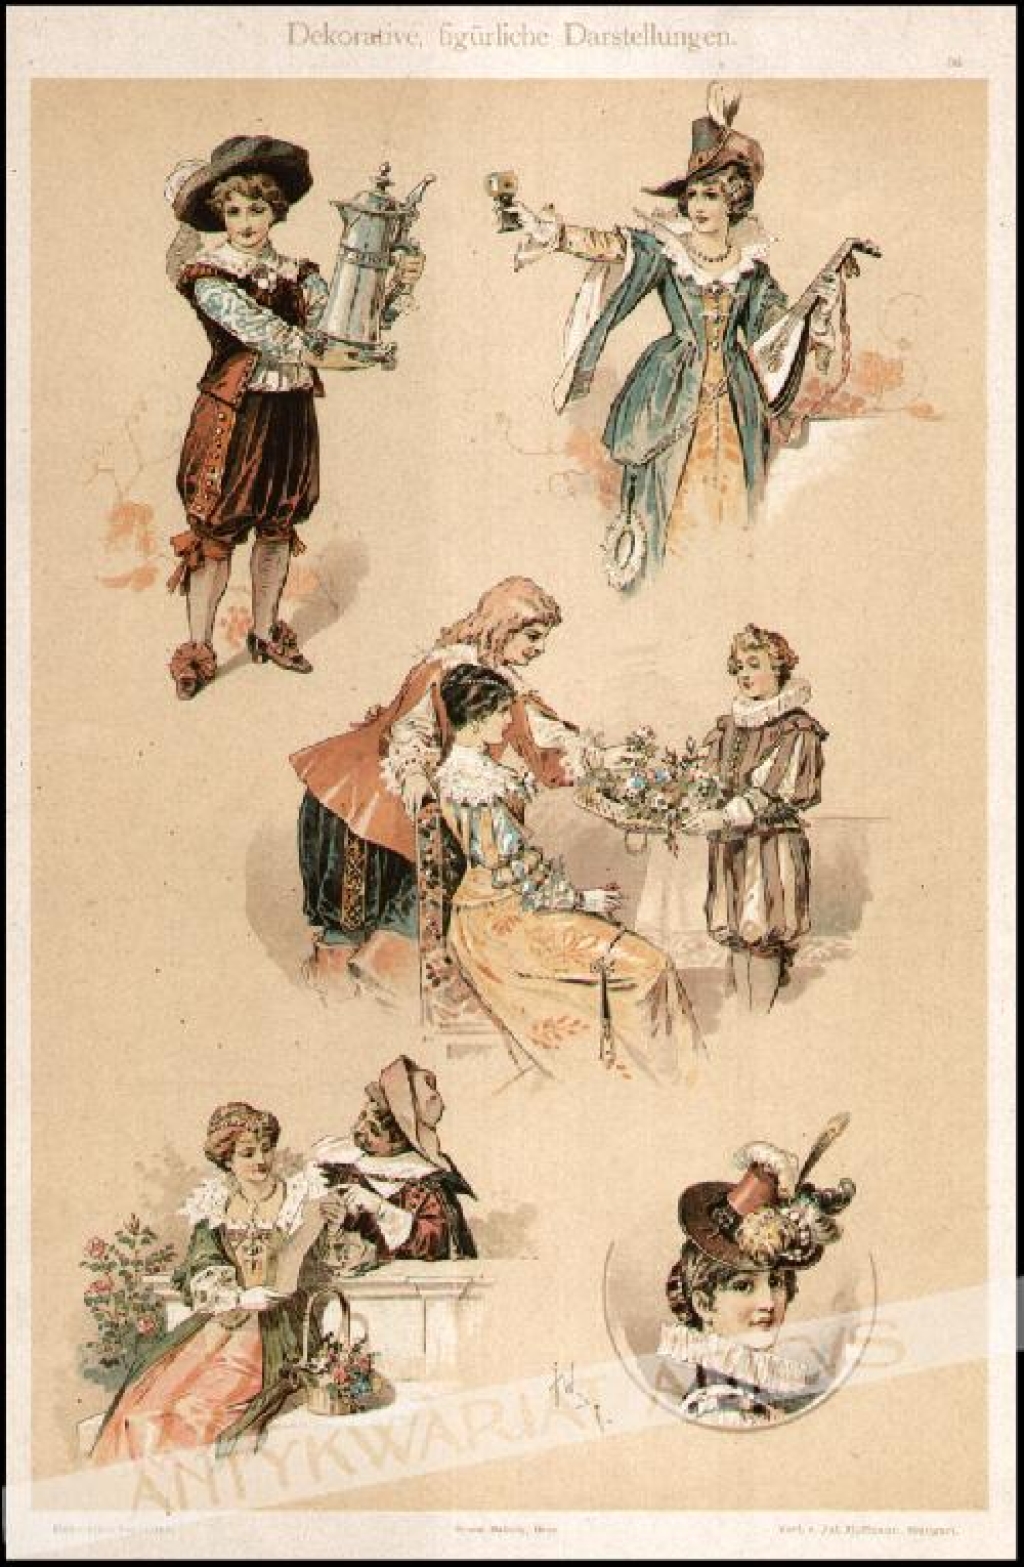 [rycina, 1895] Dekorative, figurliche Darstellungen